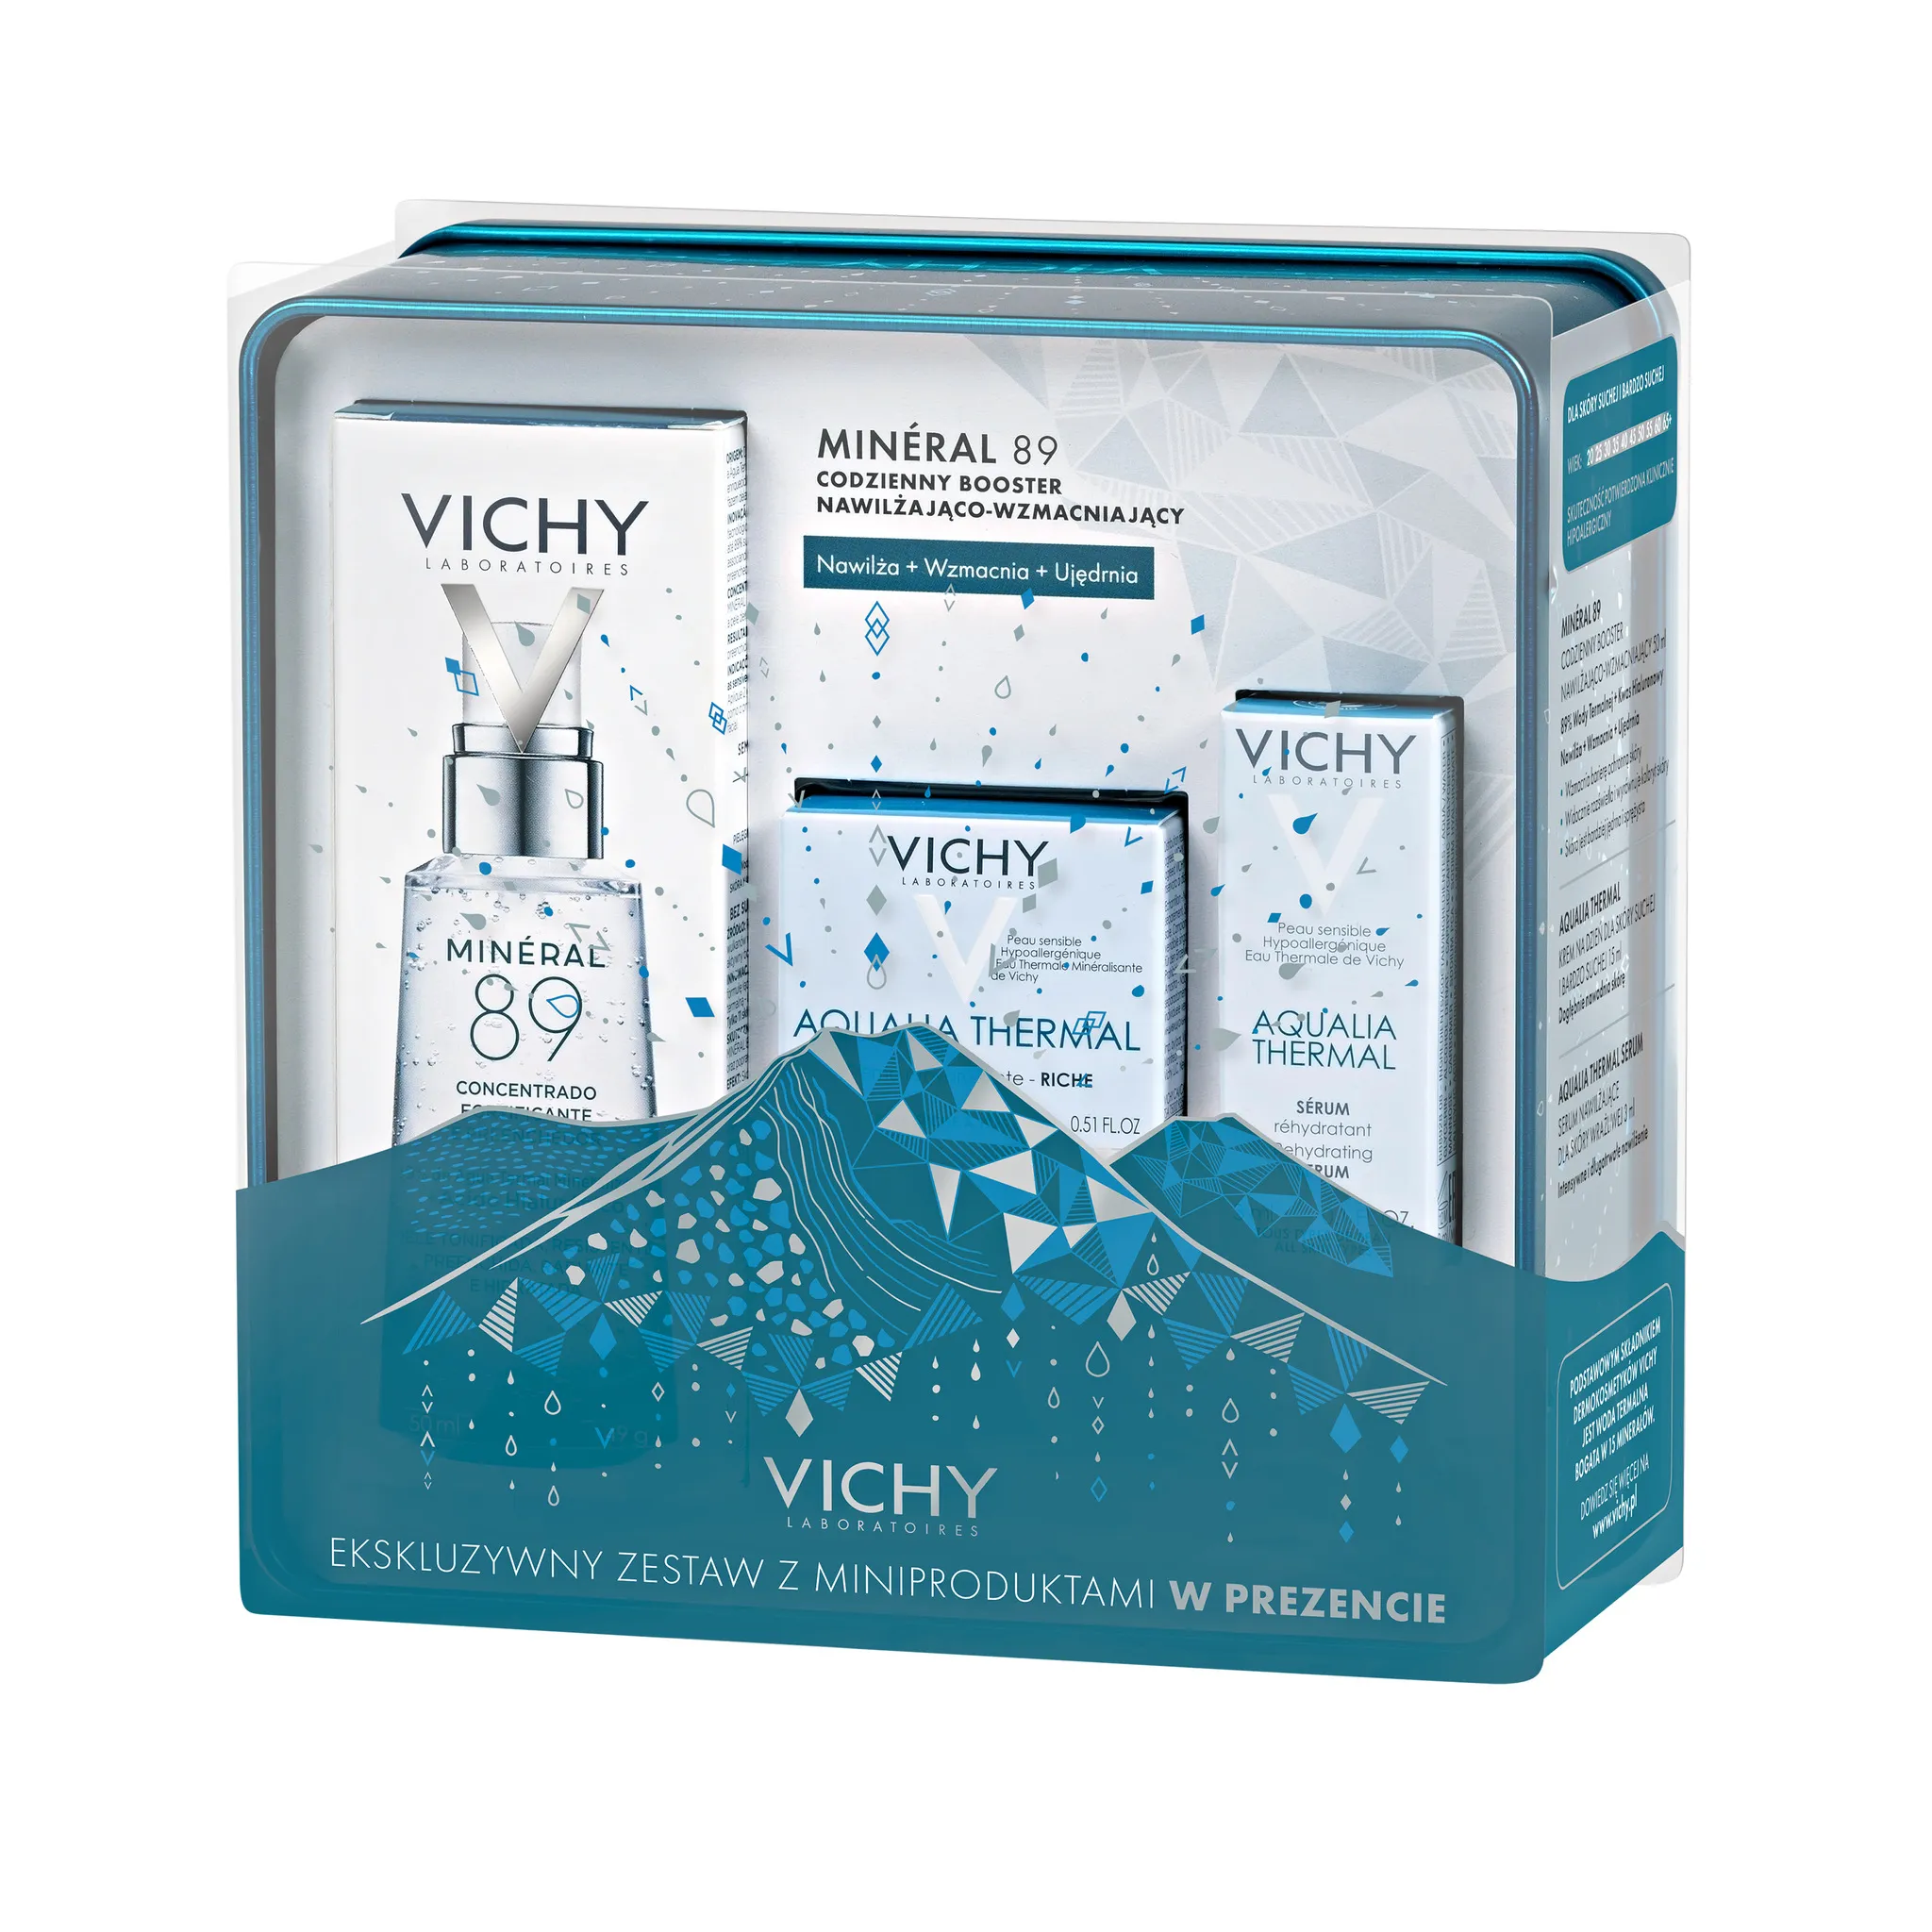 Vichy zestaw Booster Mineral 89, booster wzmacniająco-nawilżający, 50 ml + bogaty krem nawilżający na dzień Aqualia Termal, 15 ml  + serum nawilżające Aqualia Termal, 3 ml